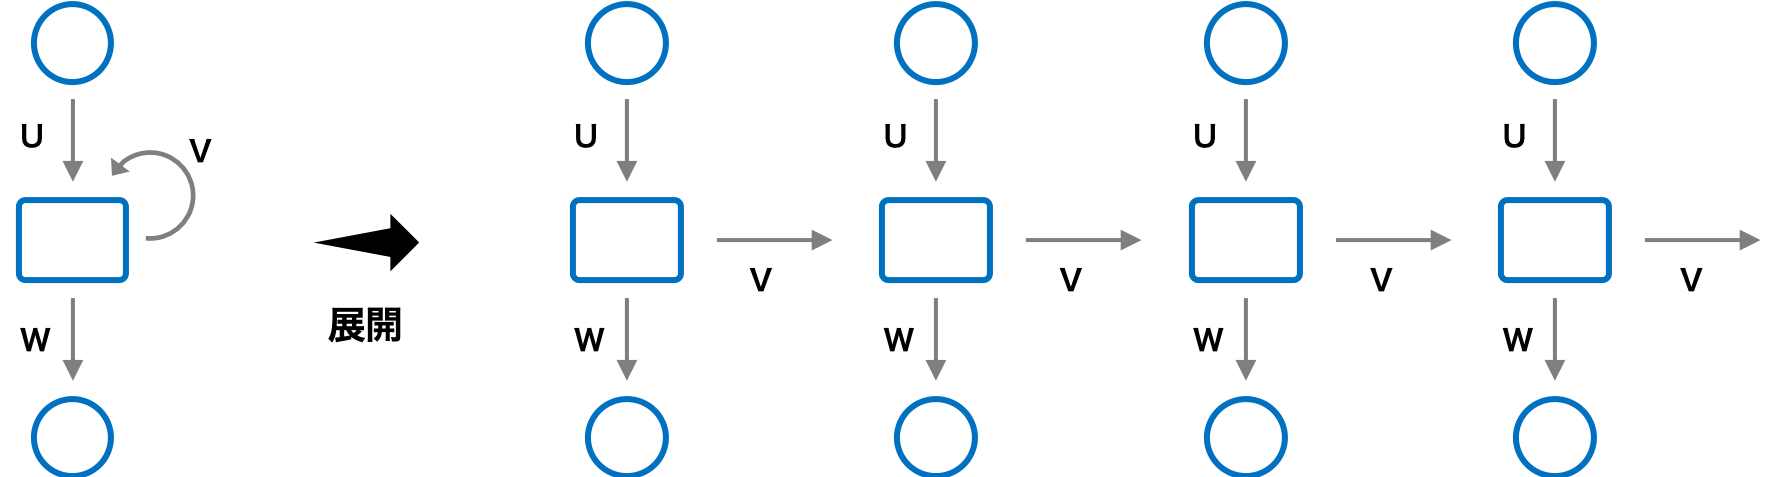 再帰型ニューラルネットワークの構造（ネットワーク構造）